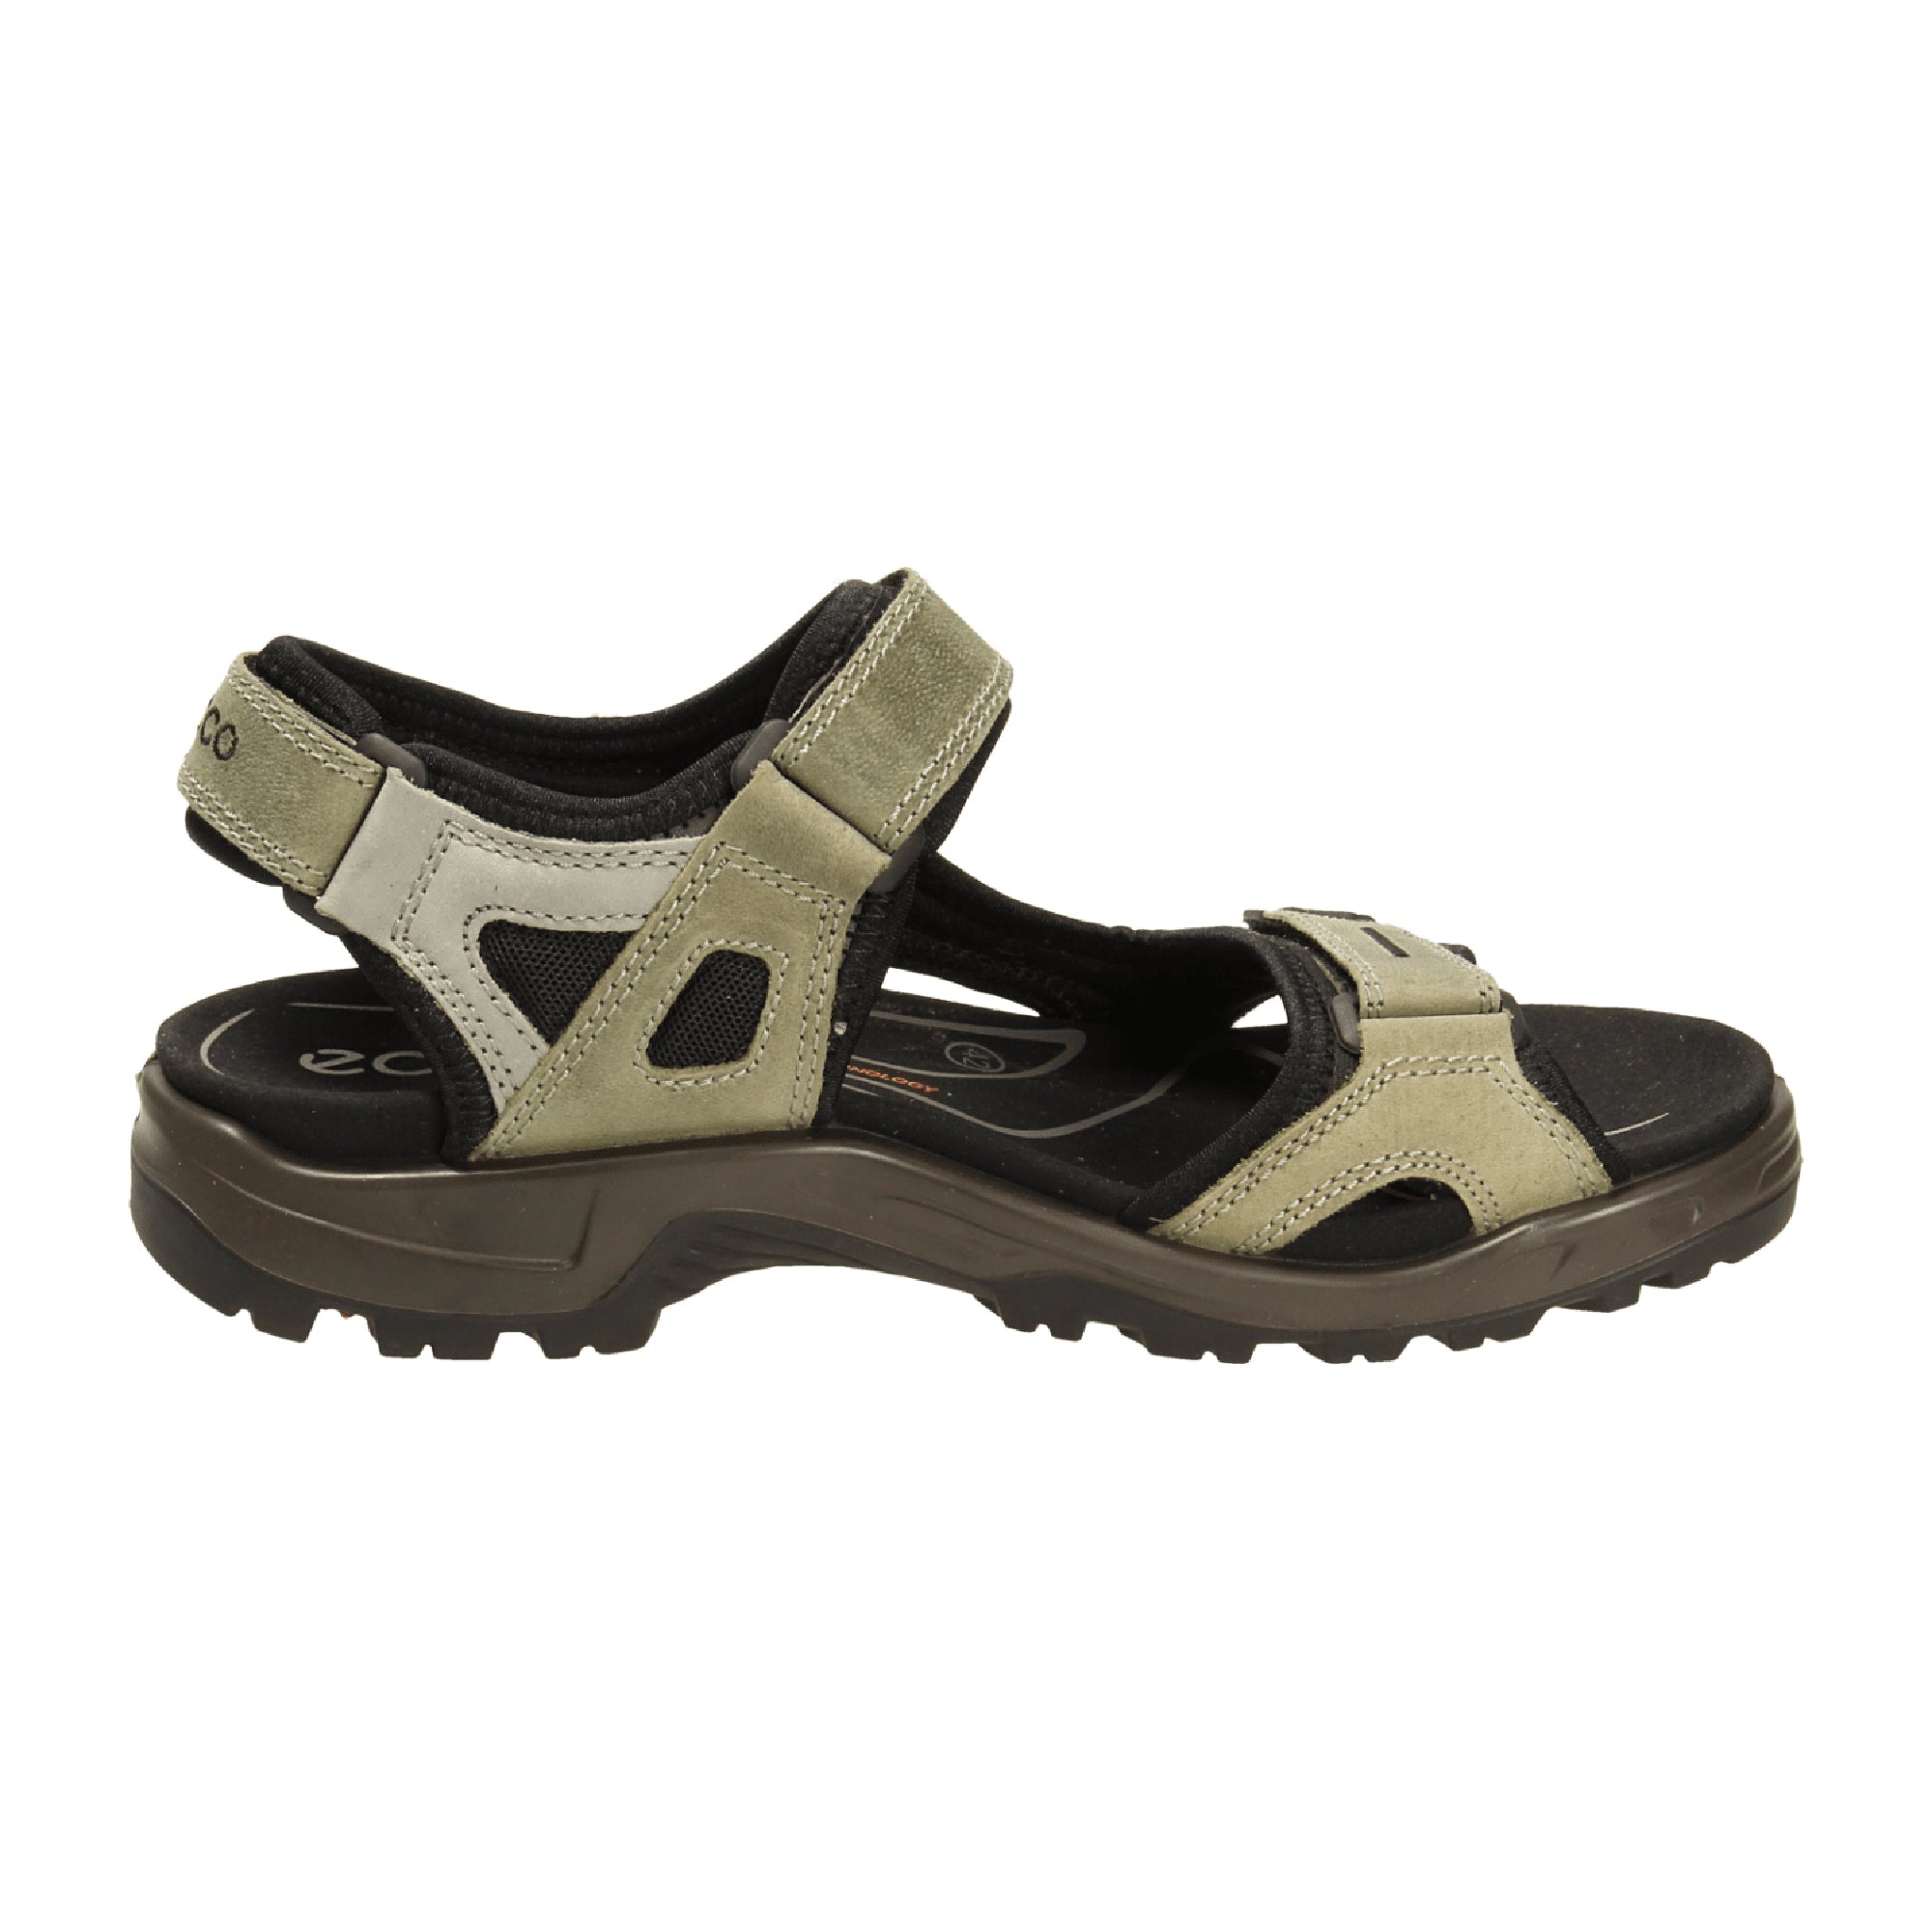 Ecco Men's OFFROAD Sandal Beige - Durable Outdoor Trekking Sandals